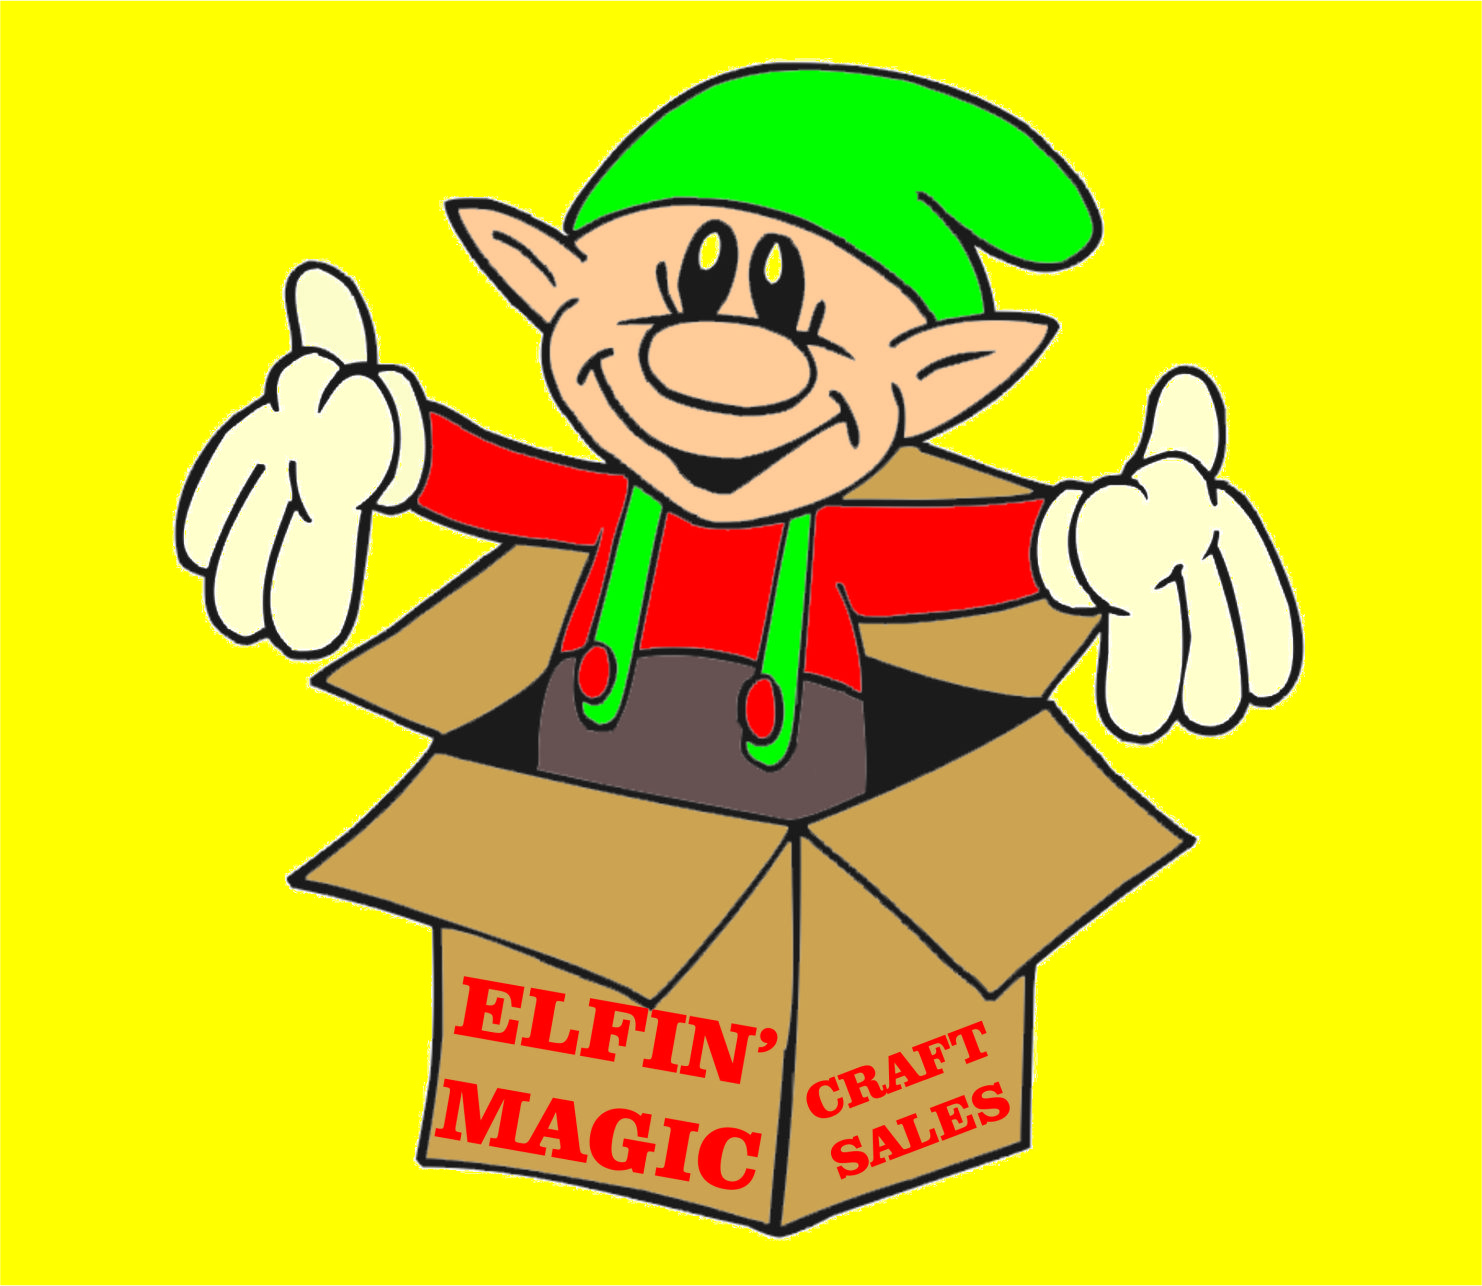 Elfin’ Magic Craft Sale